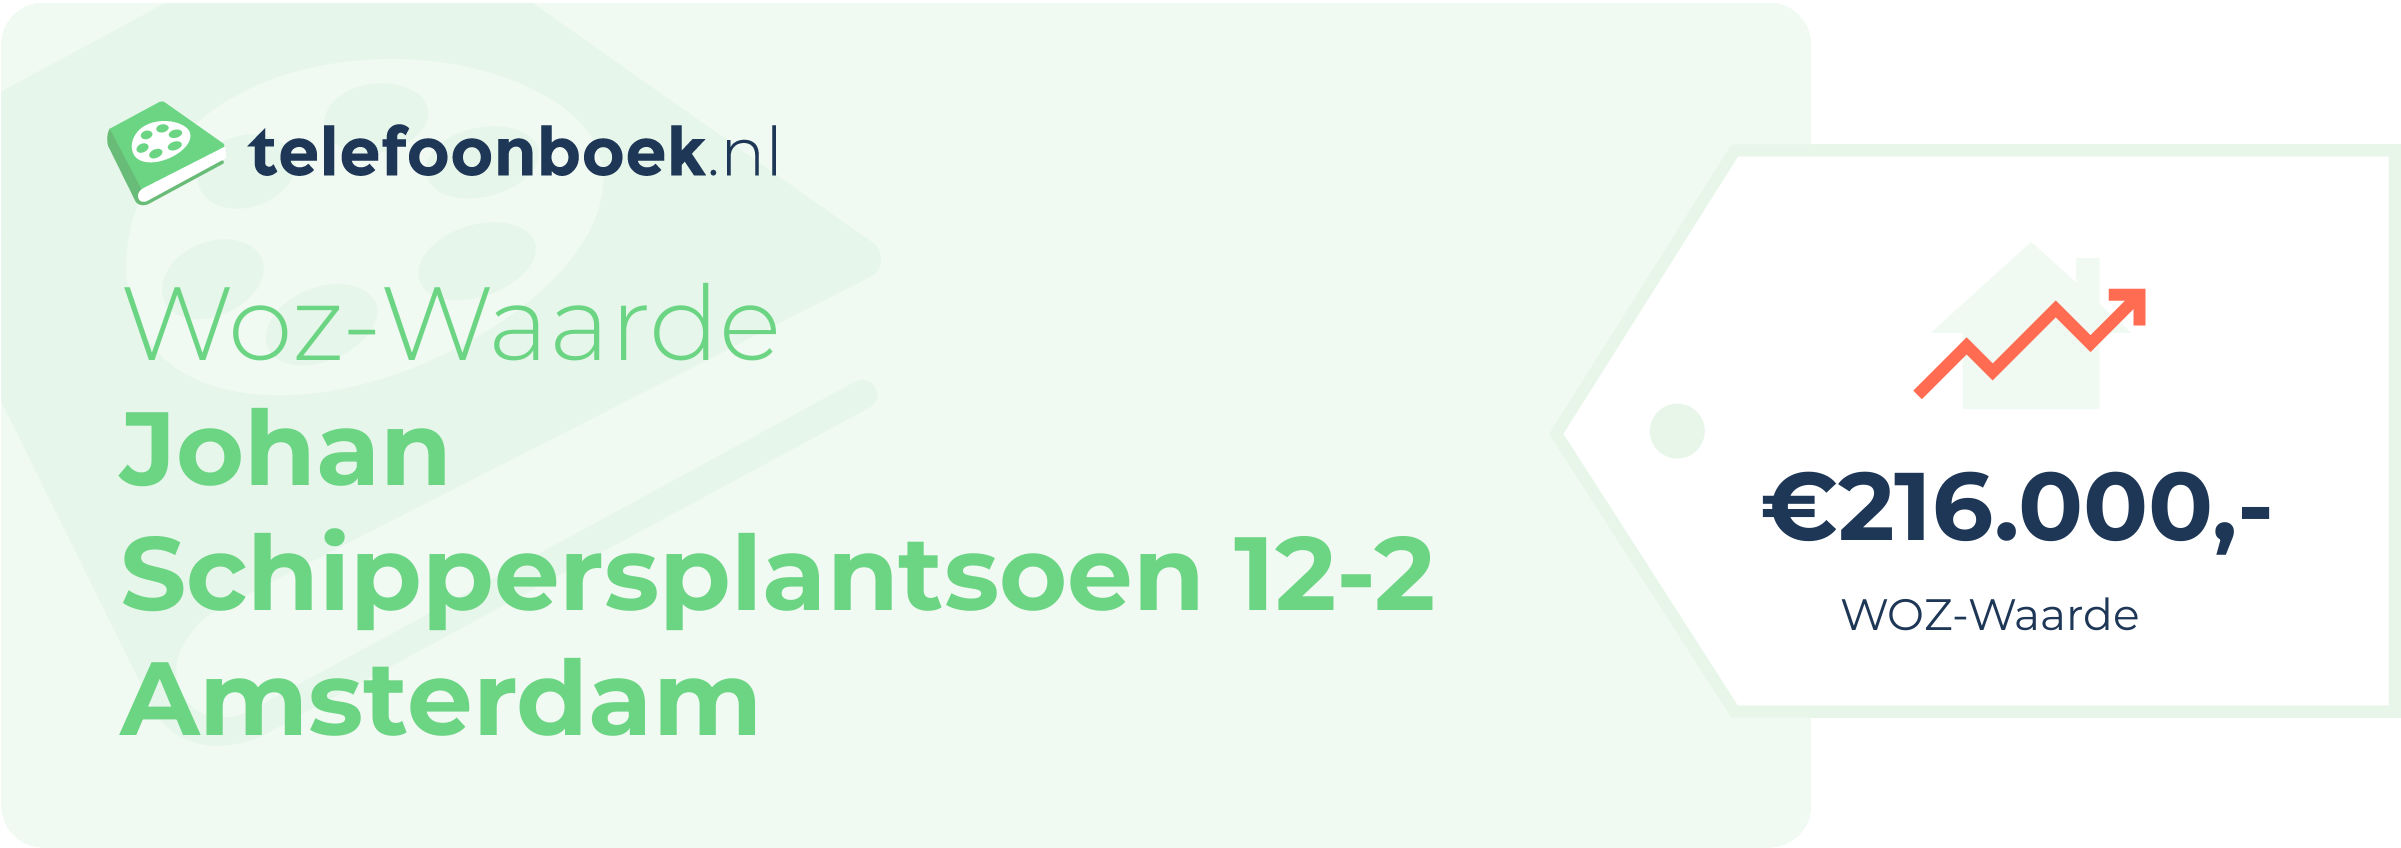 WOZ-waarde Johan Schippersplantsoen 12-2 Amsterdam